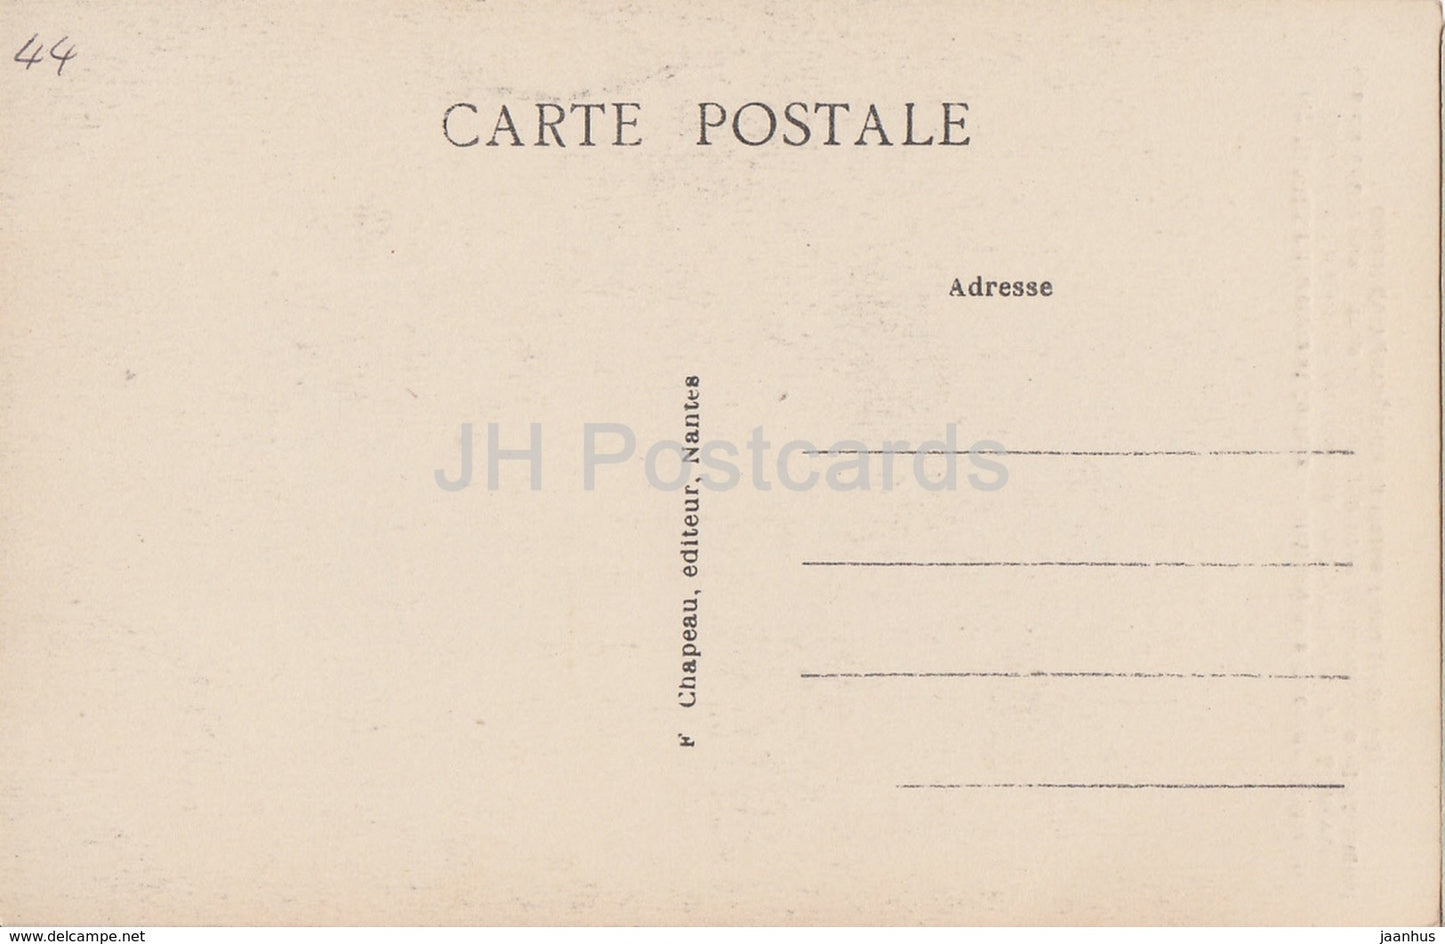 Nantes - Pittoresque et Curieux - Château des Ducs de Bretagne - château - 167 - carte postale ancienne - France - inutilisée